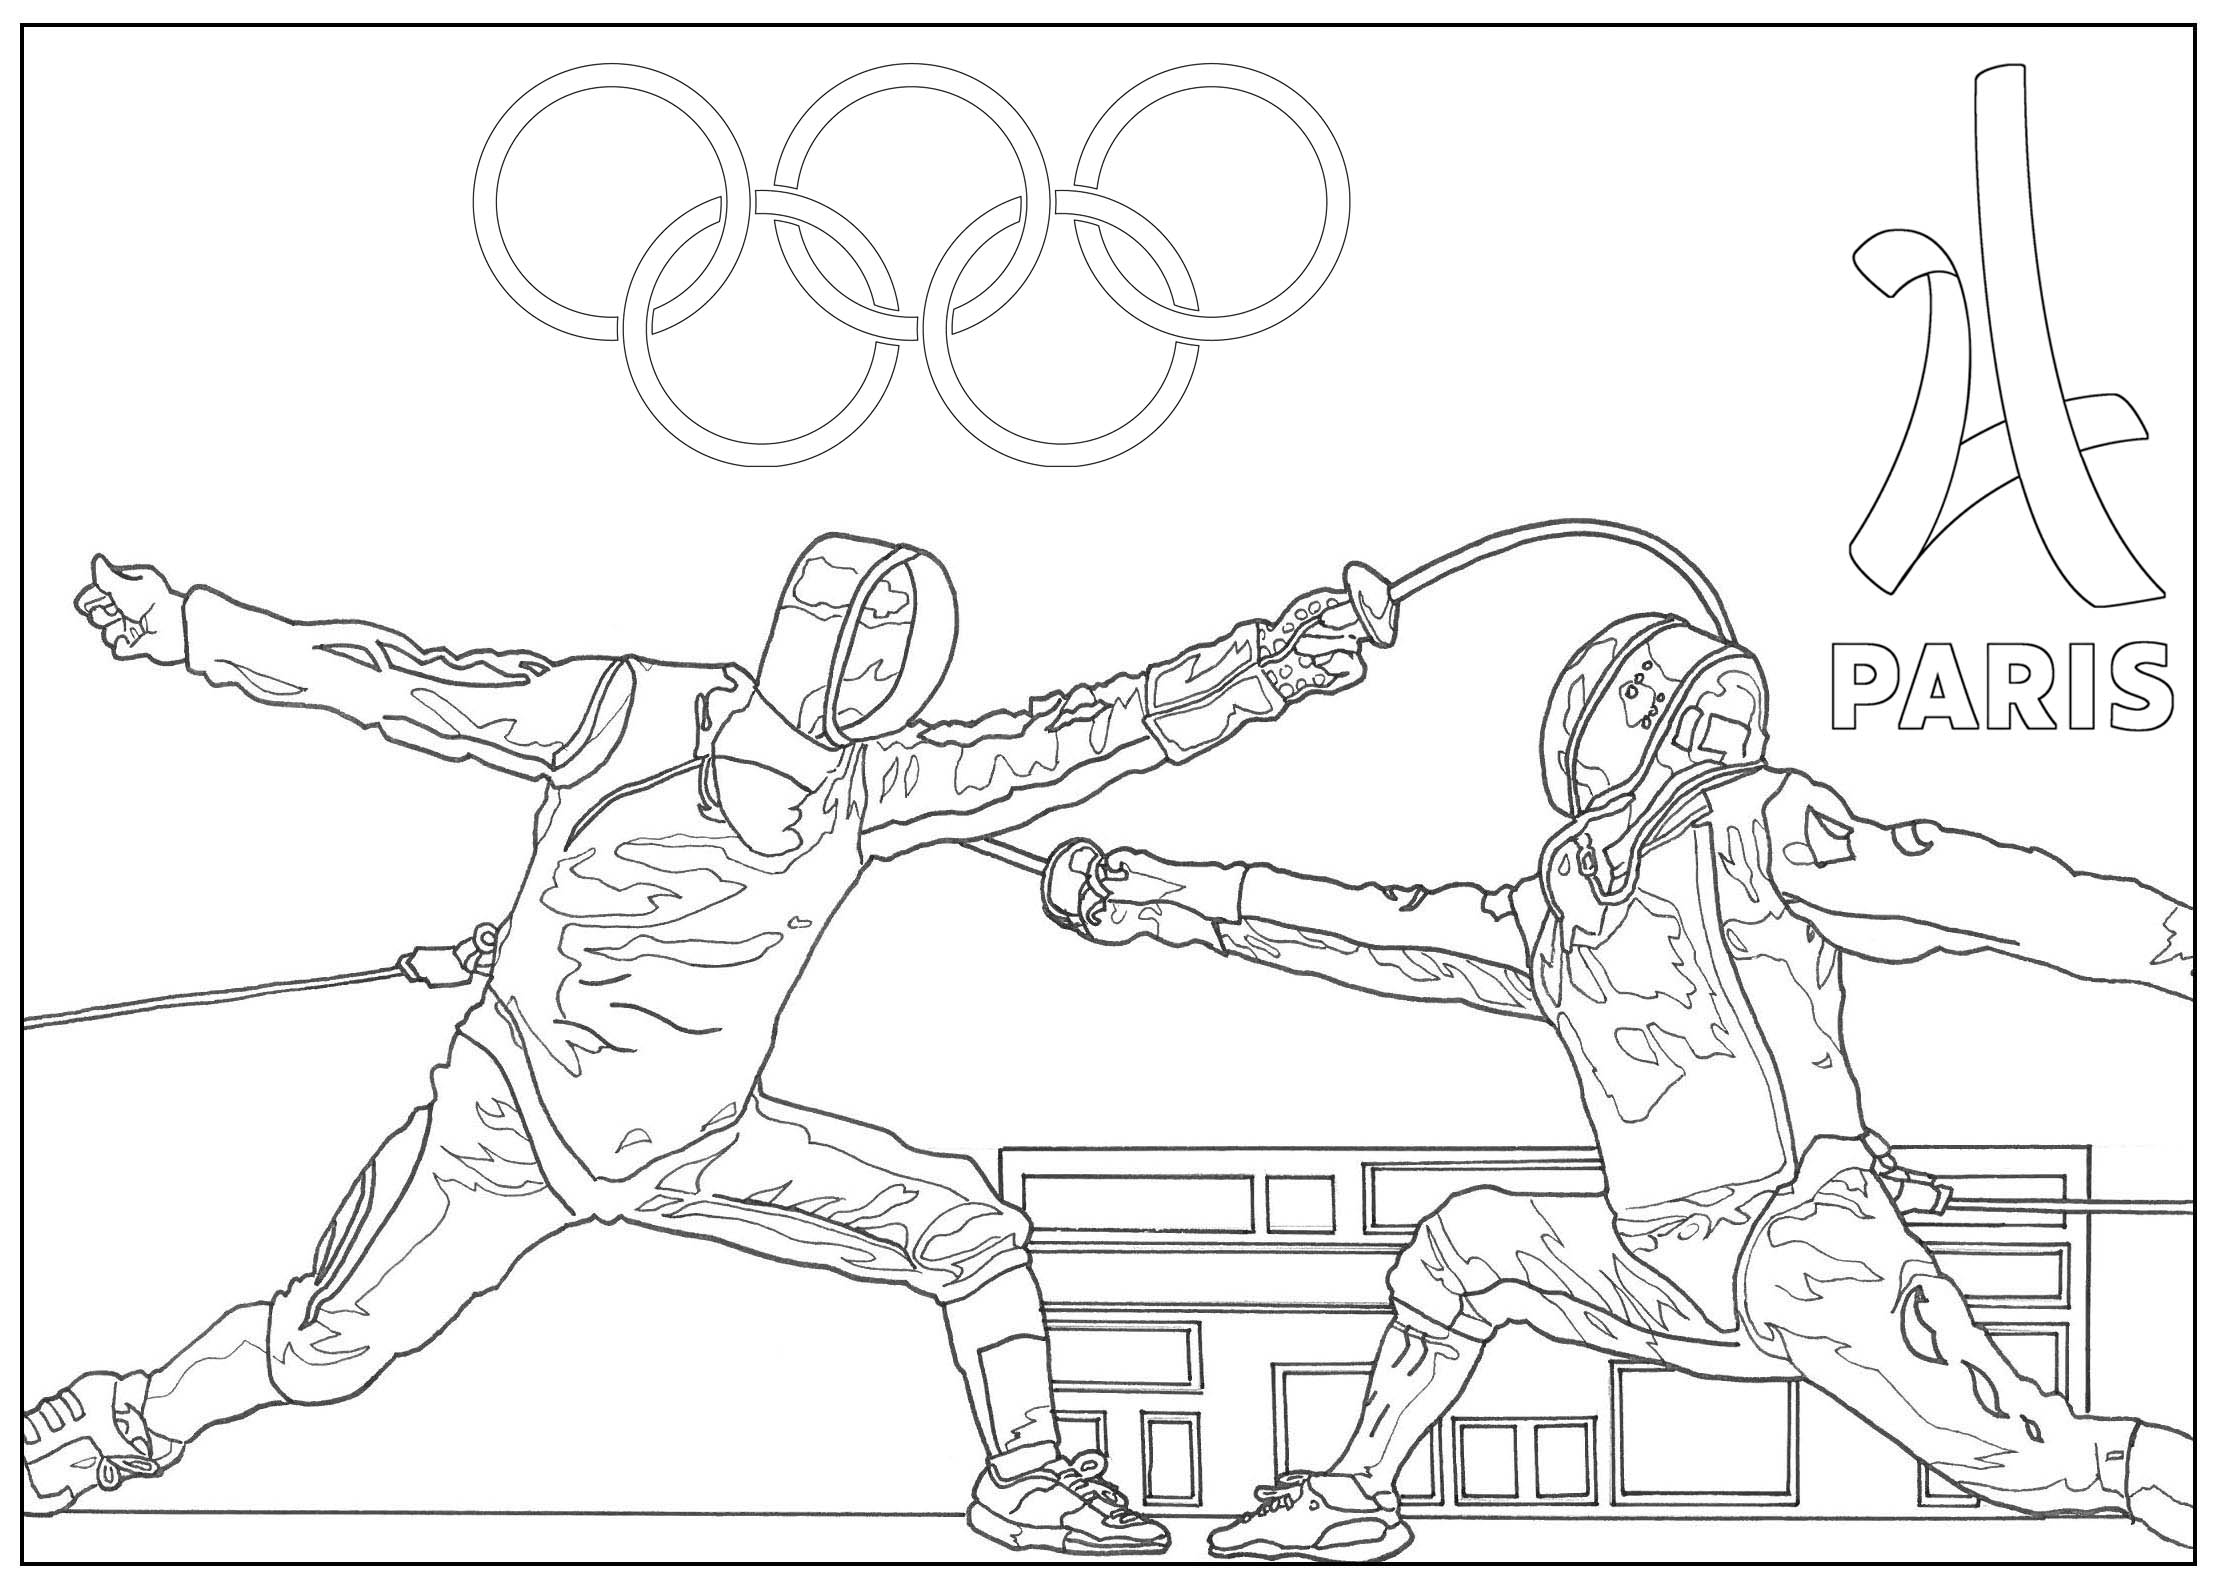 Fácil Dibujos para colorear gratis de Juegos Olímpicos